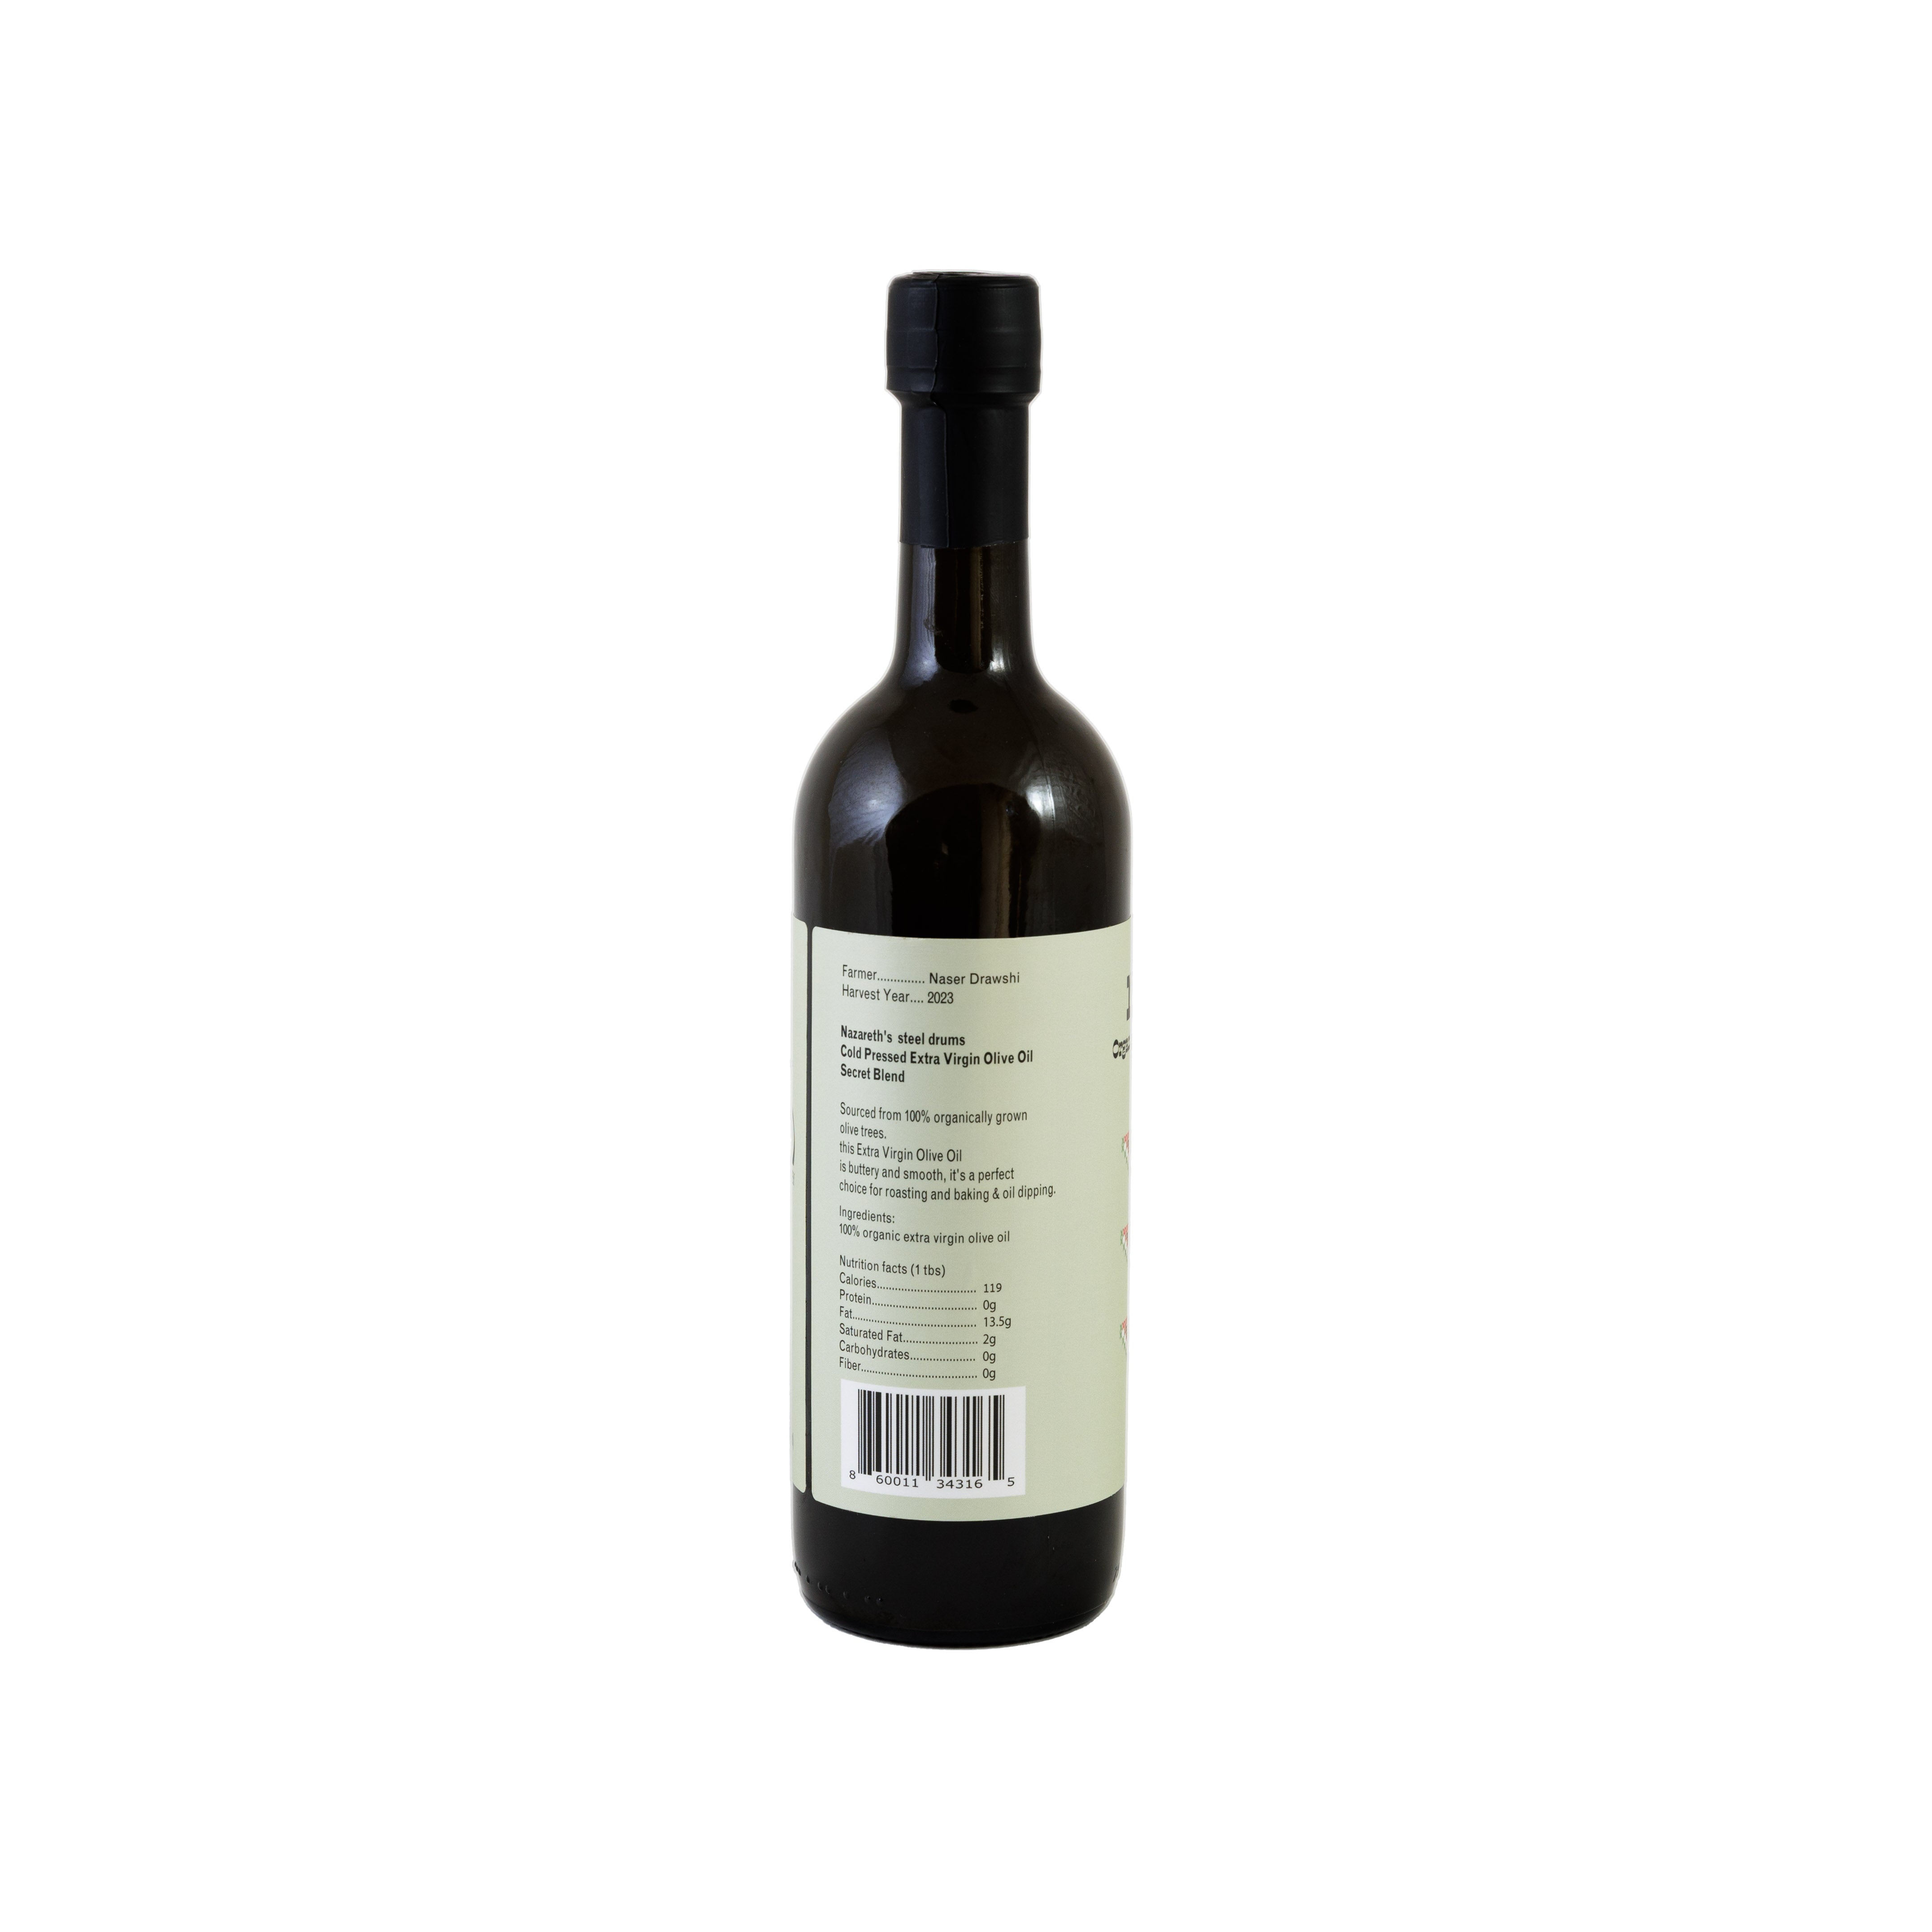 Extrahiertes Kalamata-Olivenöl aus Nazareth – einzigartiger, weicher und reichhaltiger Geschmack [Erntejahr: 2023]